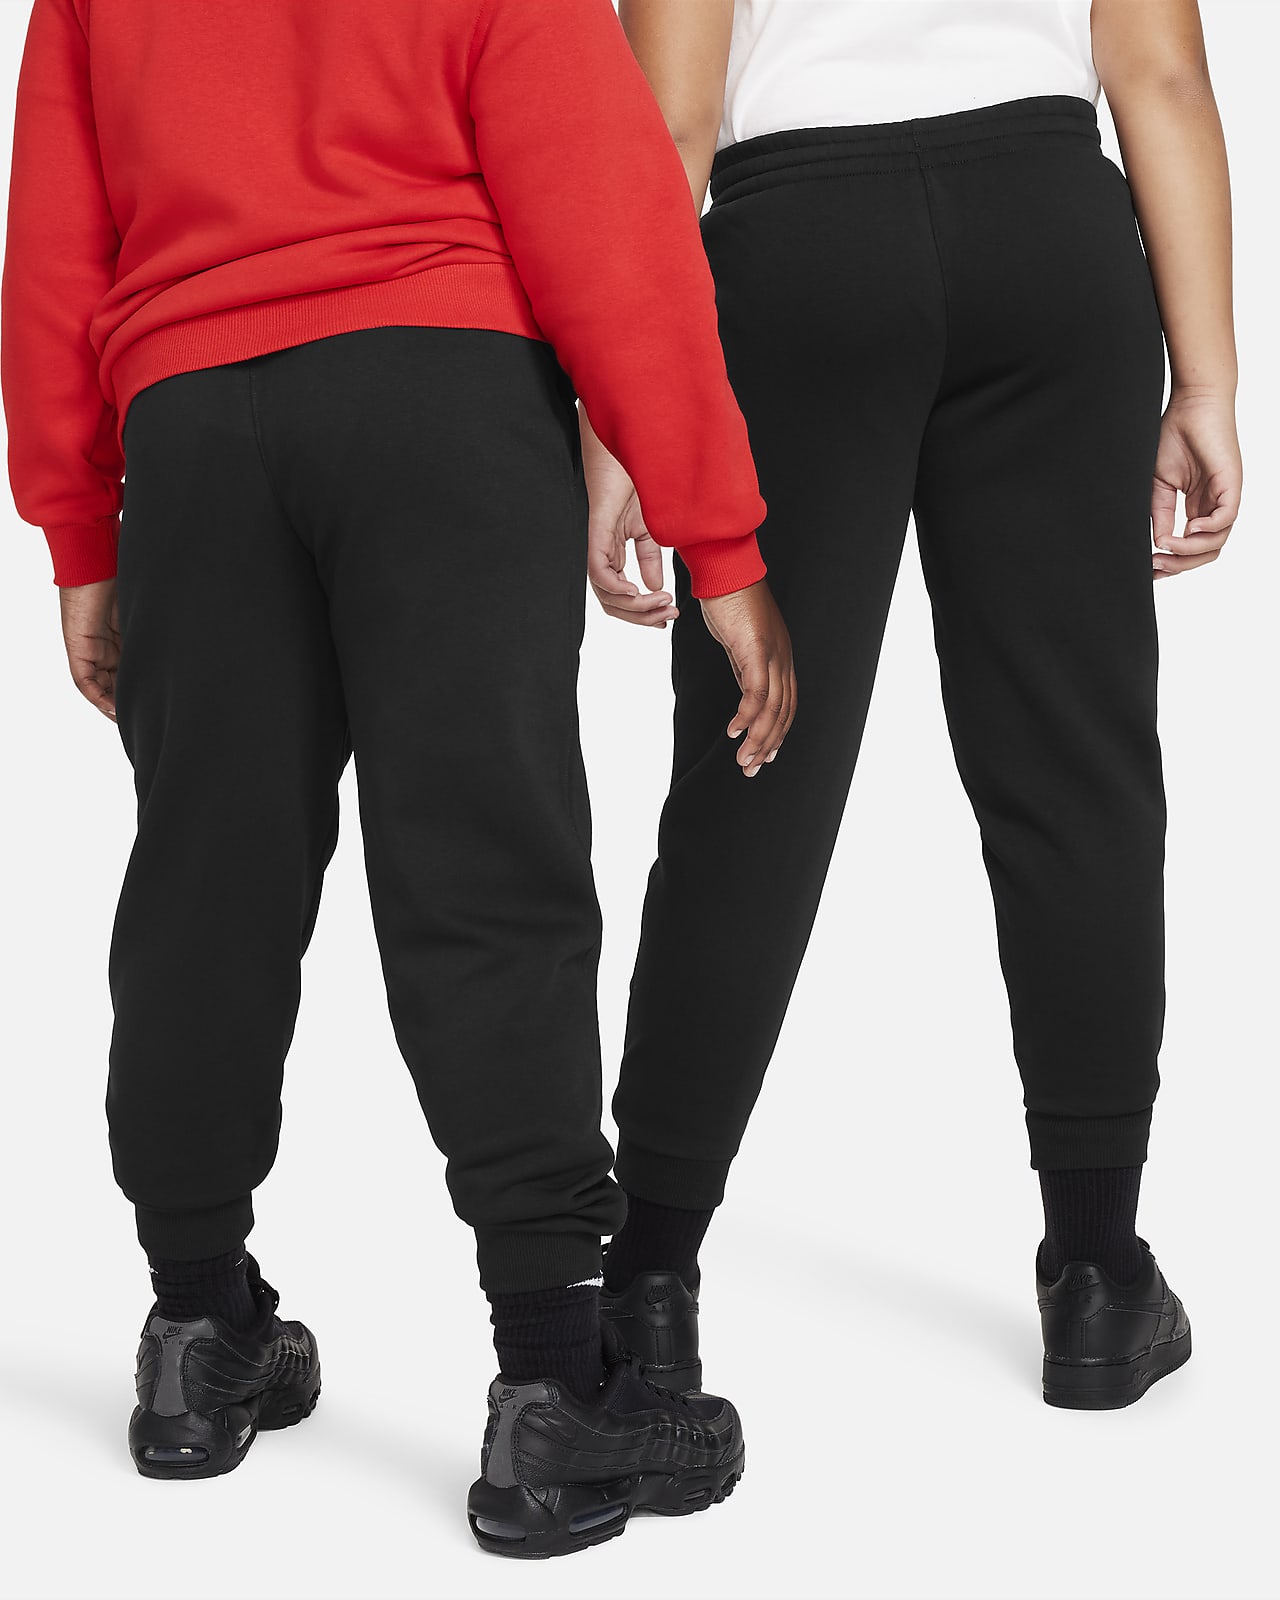 Nike Women's Sportswear Club Fleece Joggers - Black